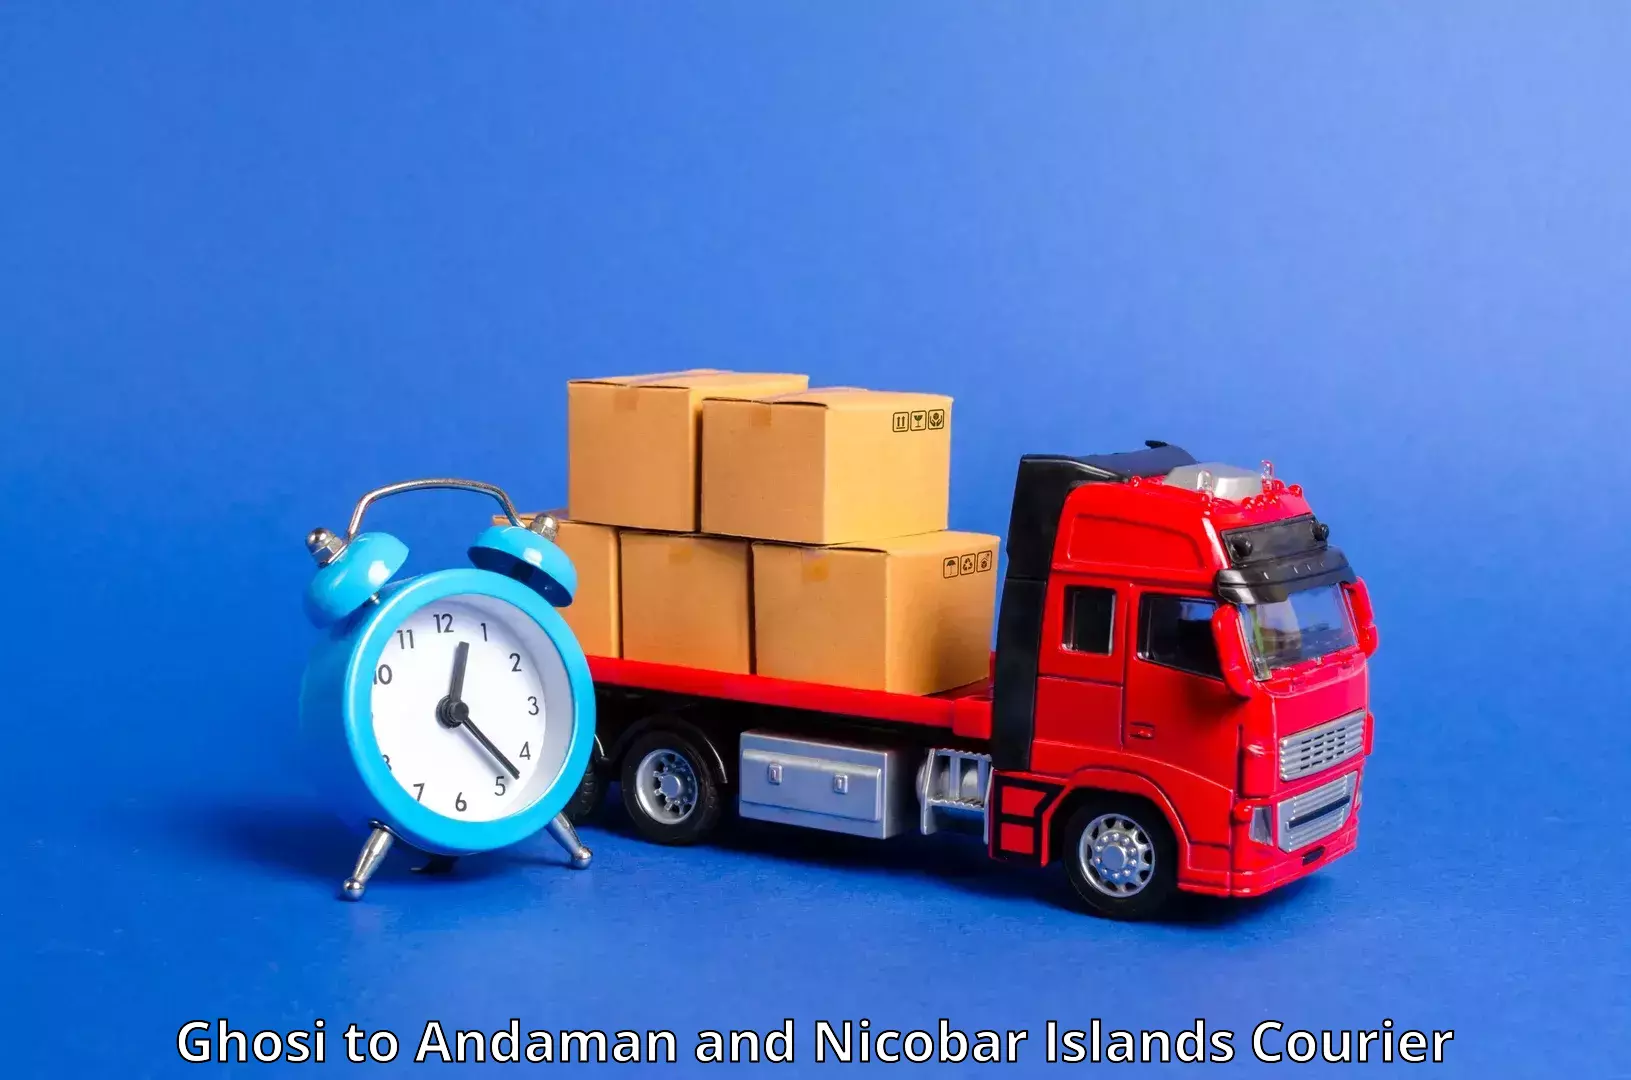 Express logistics service Ghosi to Andaman and Nicobar Islands